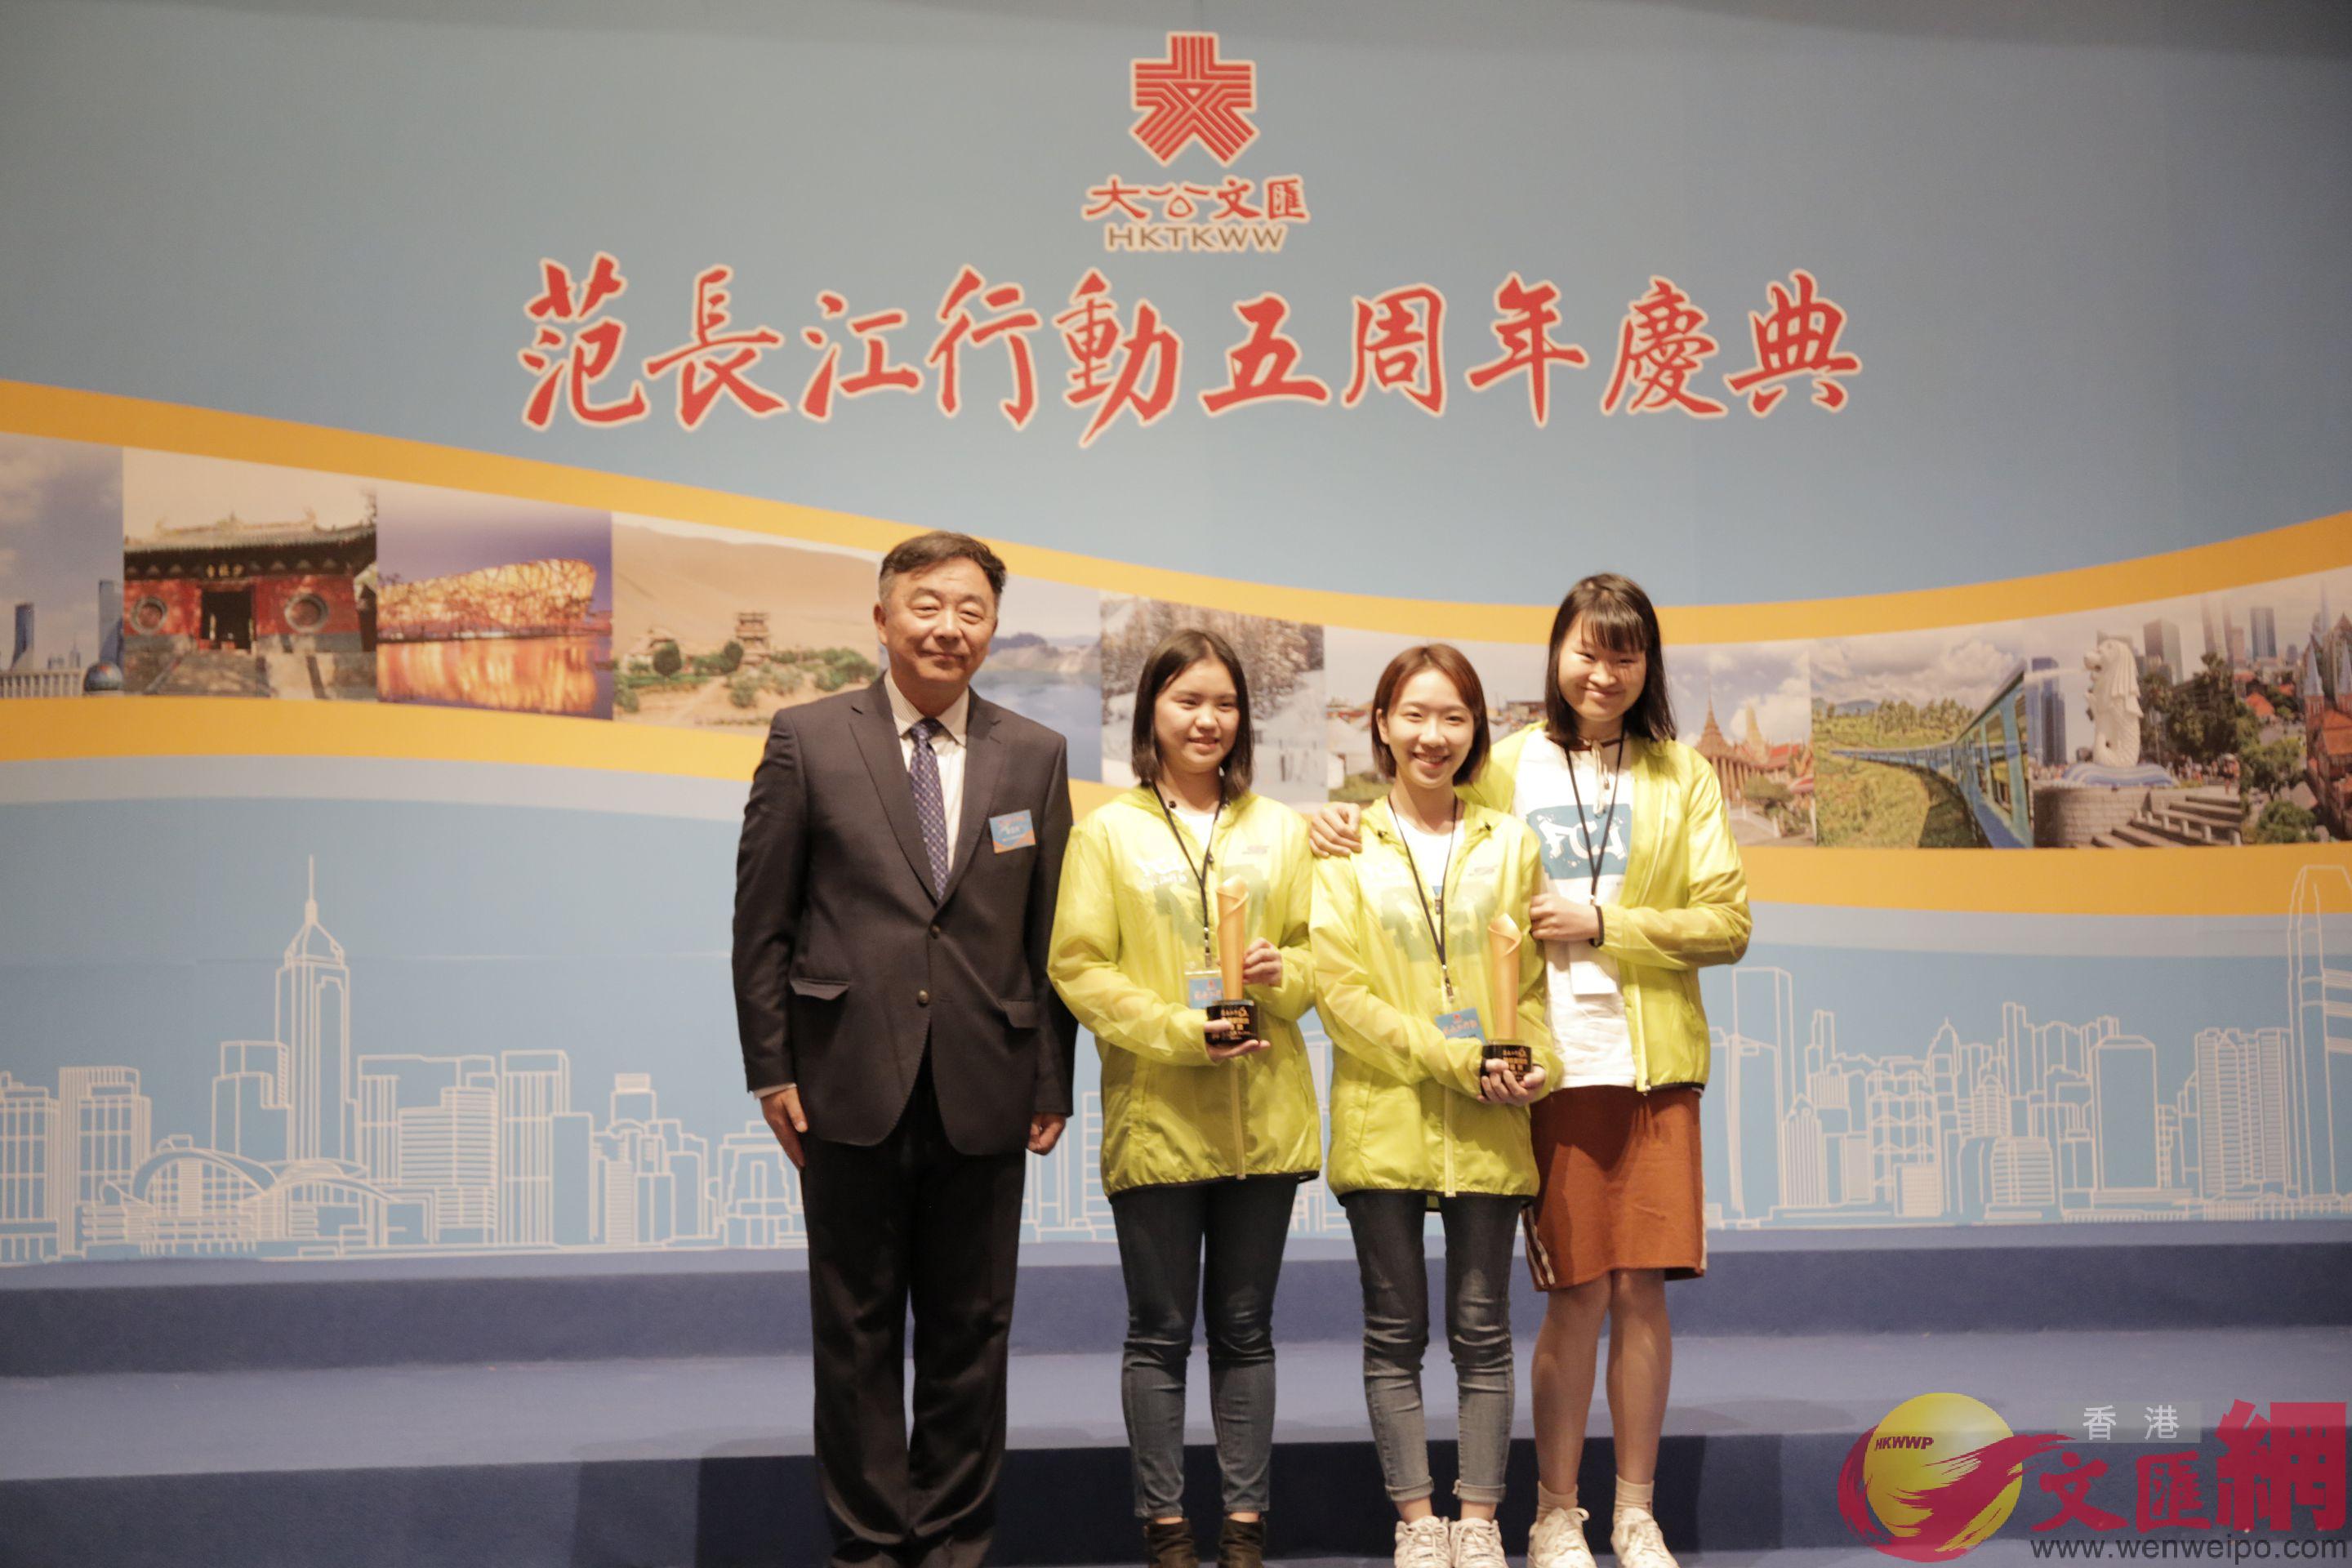 榮獲五周年最佳新聞銀獎的學生與頒獎嘉賓合影]記者 鄧智仁 攝^